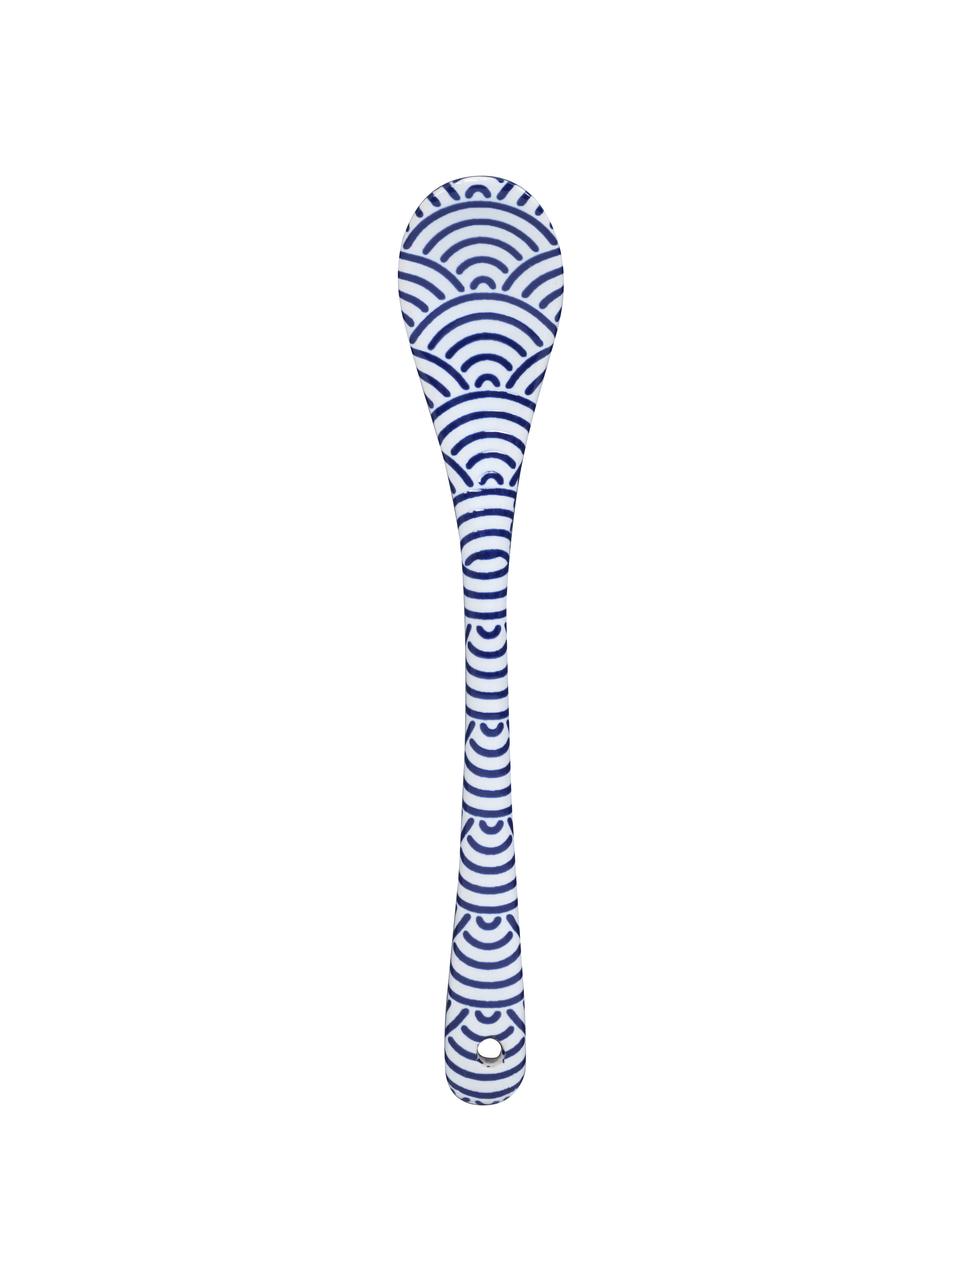 Handgemachtes Löffel-Set Nippon in Blau/Weiß, 4-tlg., Porzellan, Blau, Weiß, L 13 cm